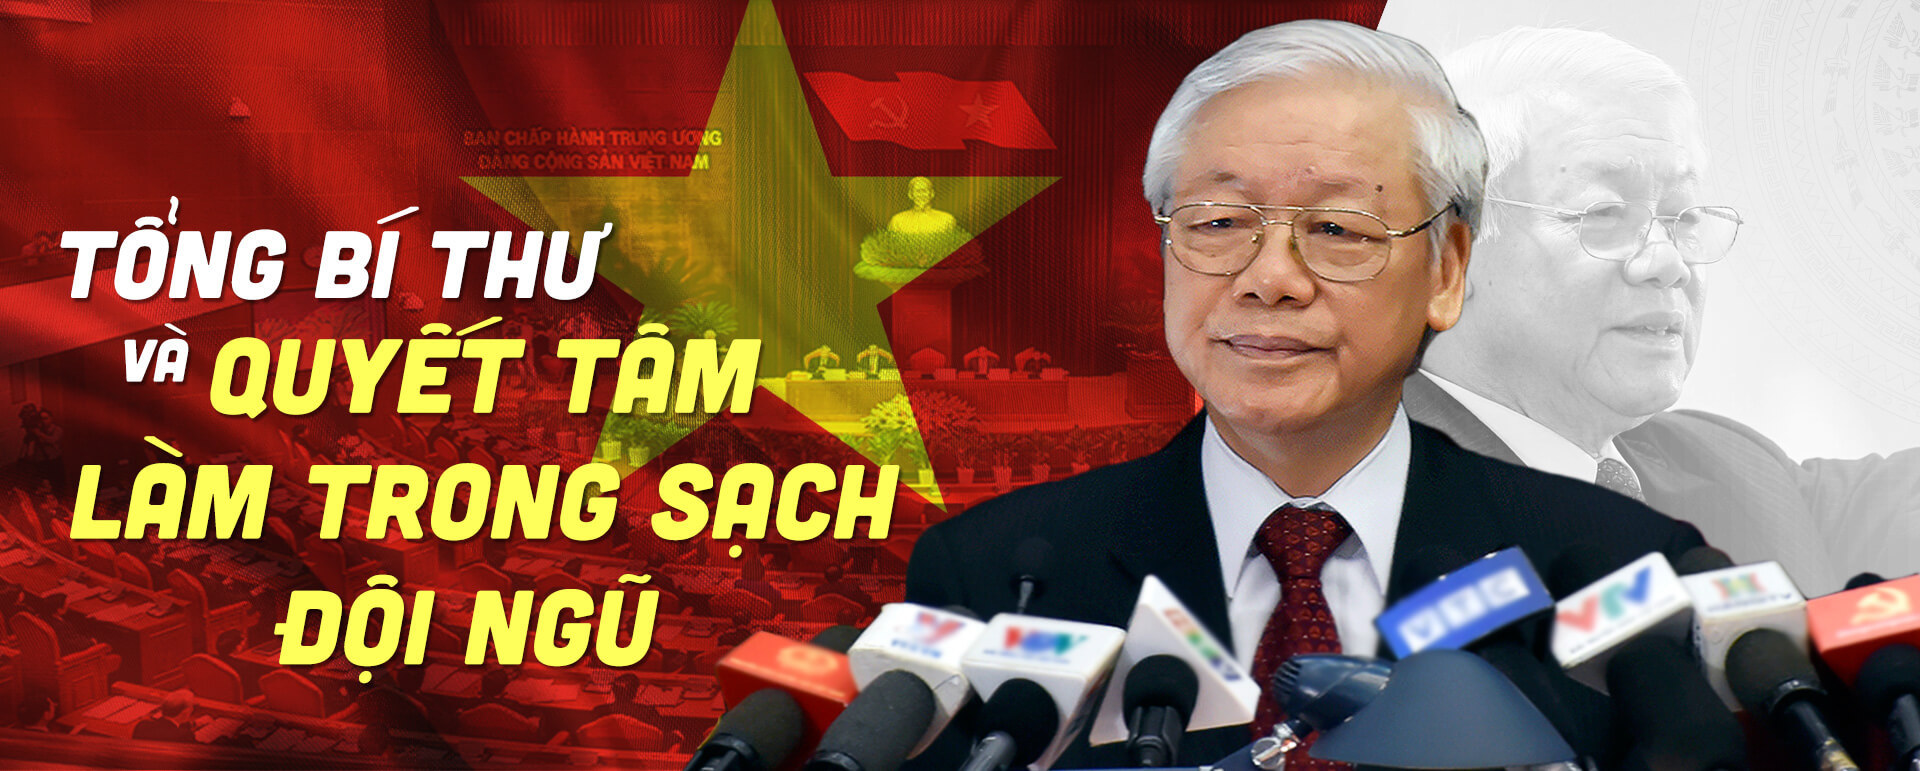 Tin mật: Tổng bí thư Nguyễn Phú Trọng đã được bỏ phiếu ‘kiêm chủ tịch nước’?